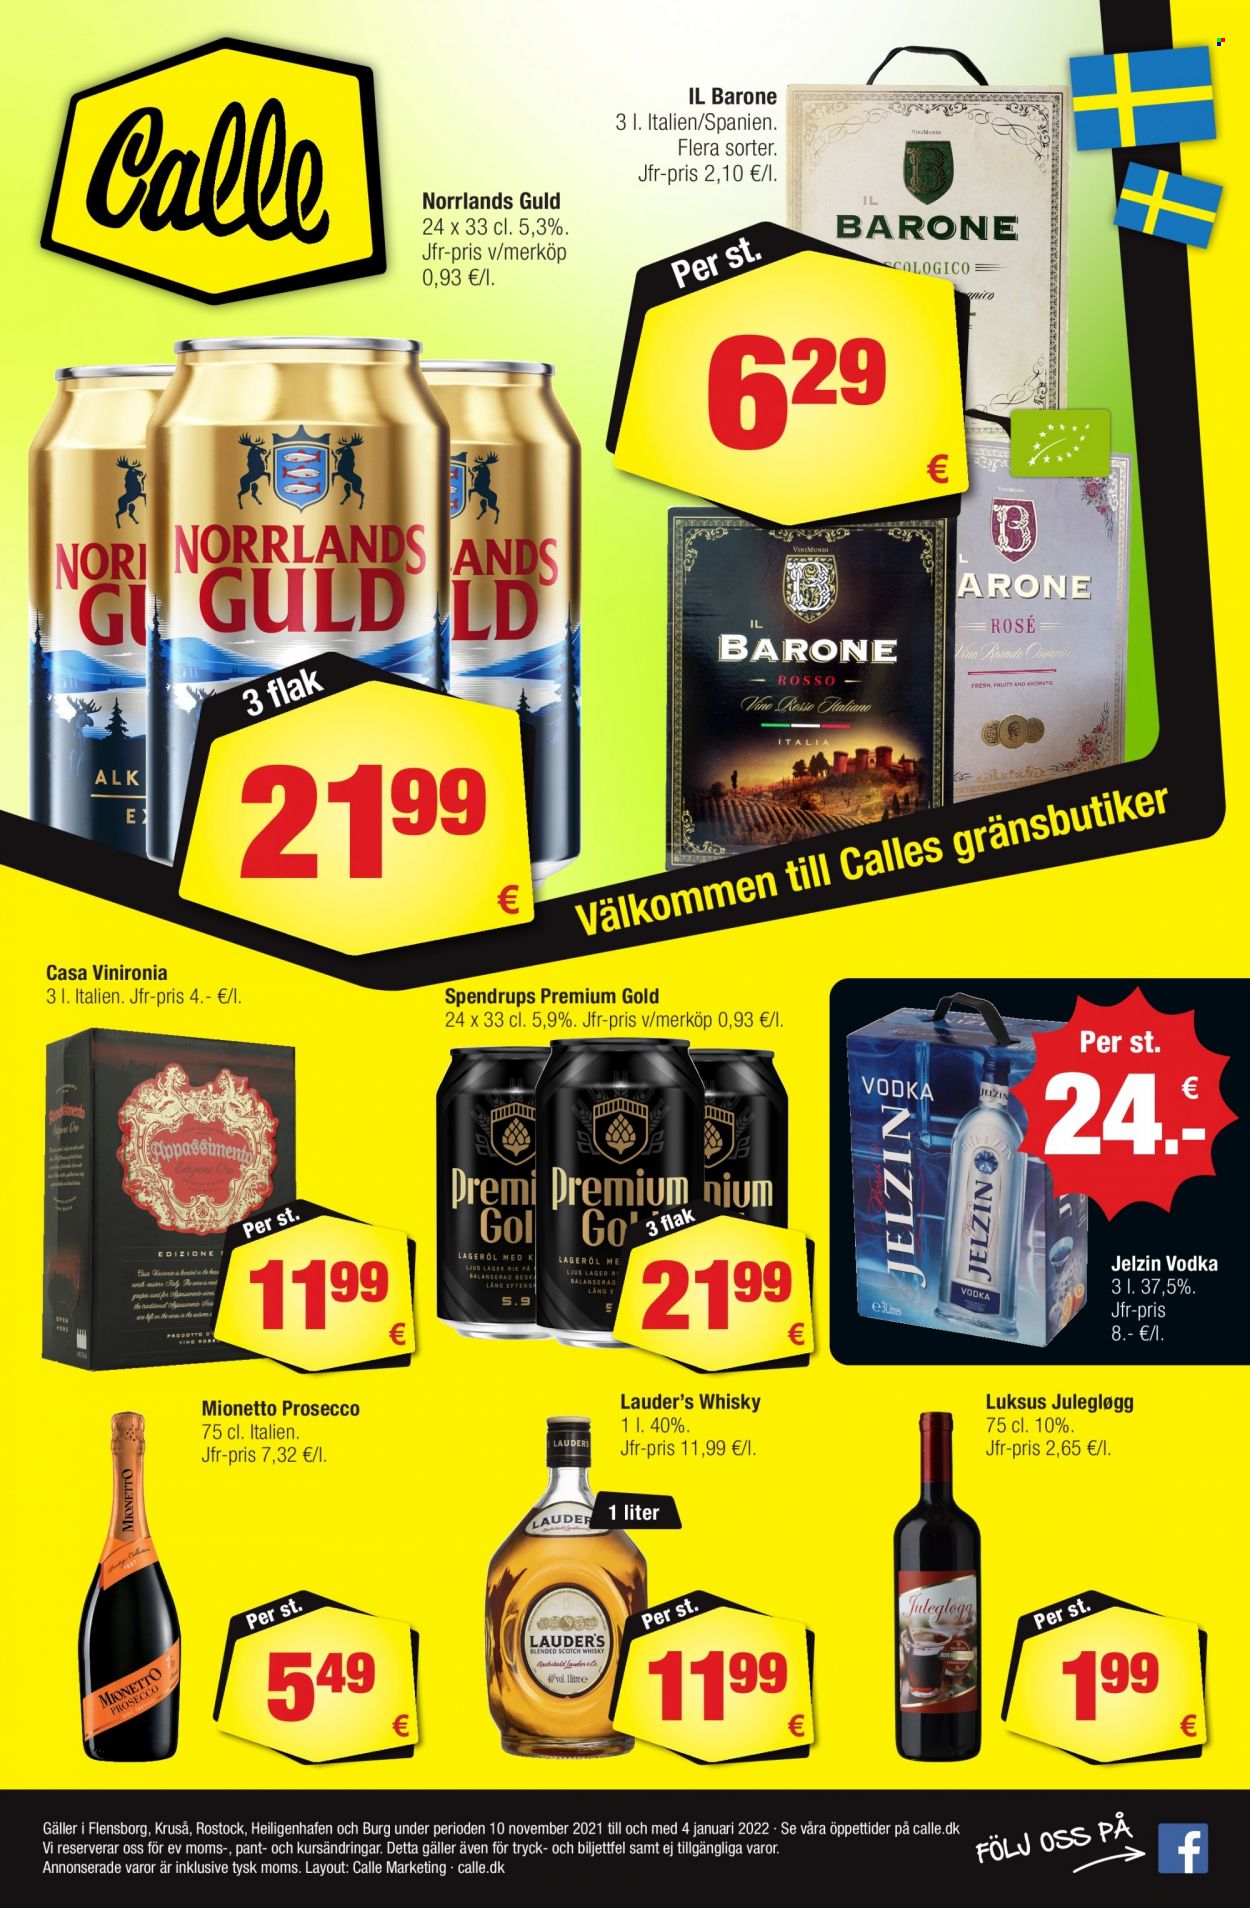 thumbnail - Calle reklamblad - 10/11 2021 - 4/1 2022 - varor från reklamblad - Norrlands Guld, Prosecco, whisky, Vodka, Jelzin. Sida 1.